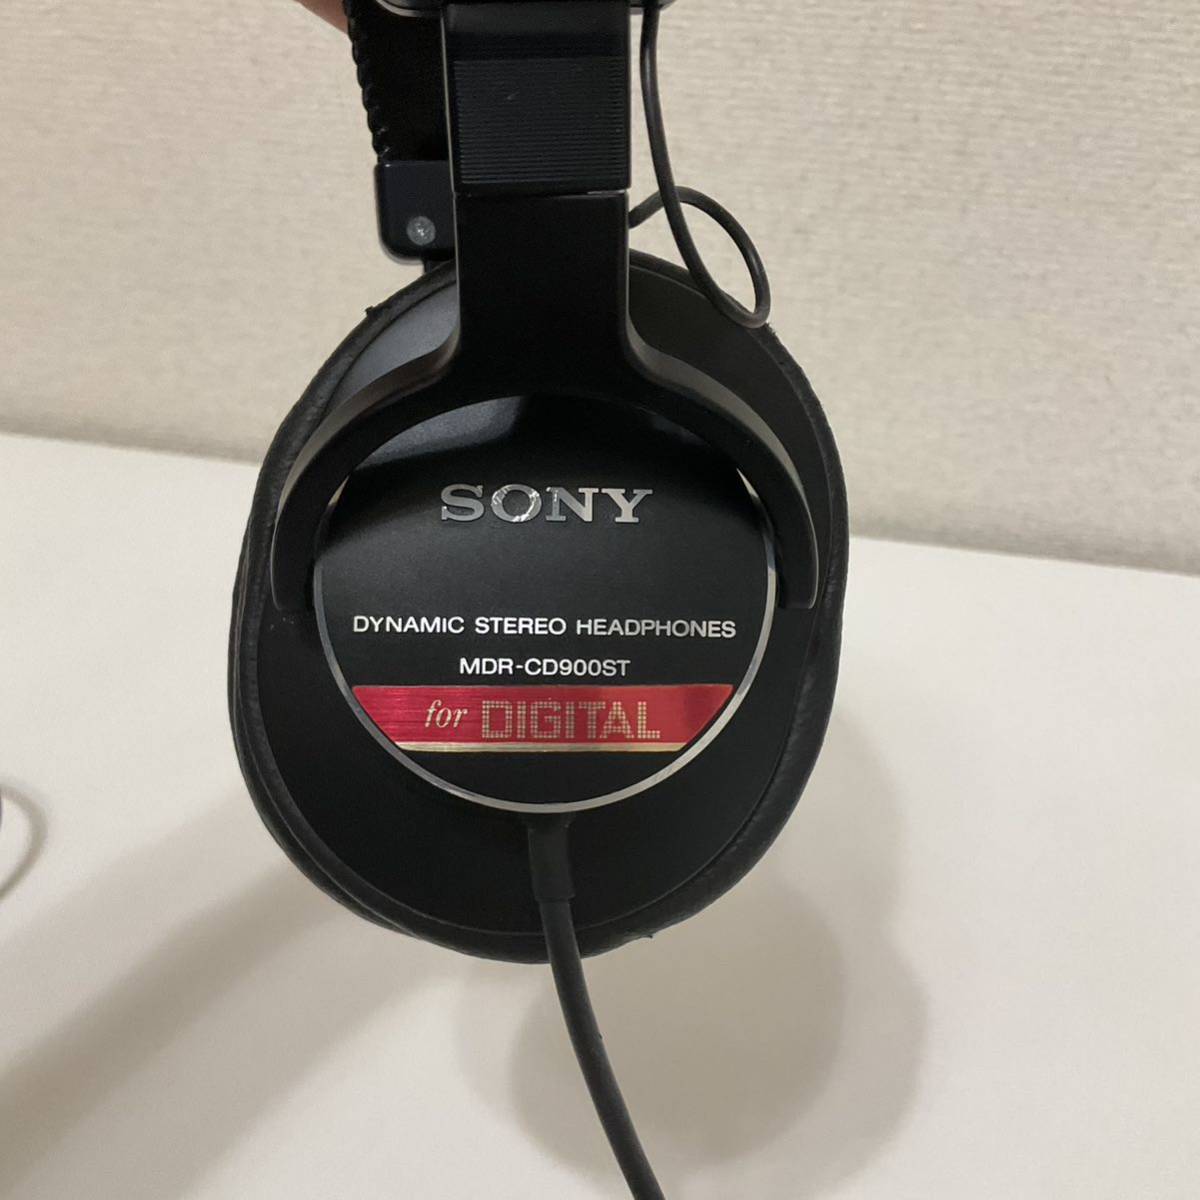 値引きする SONY MDR-CD900ST モニターヘッドホン ソニー - www